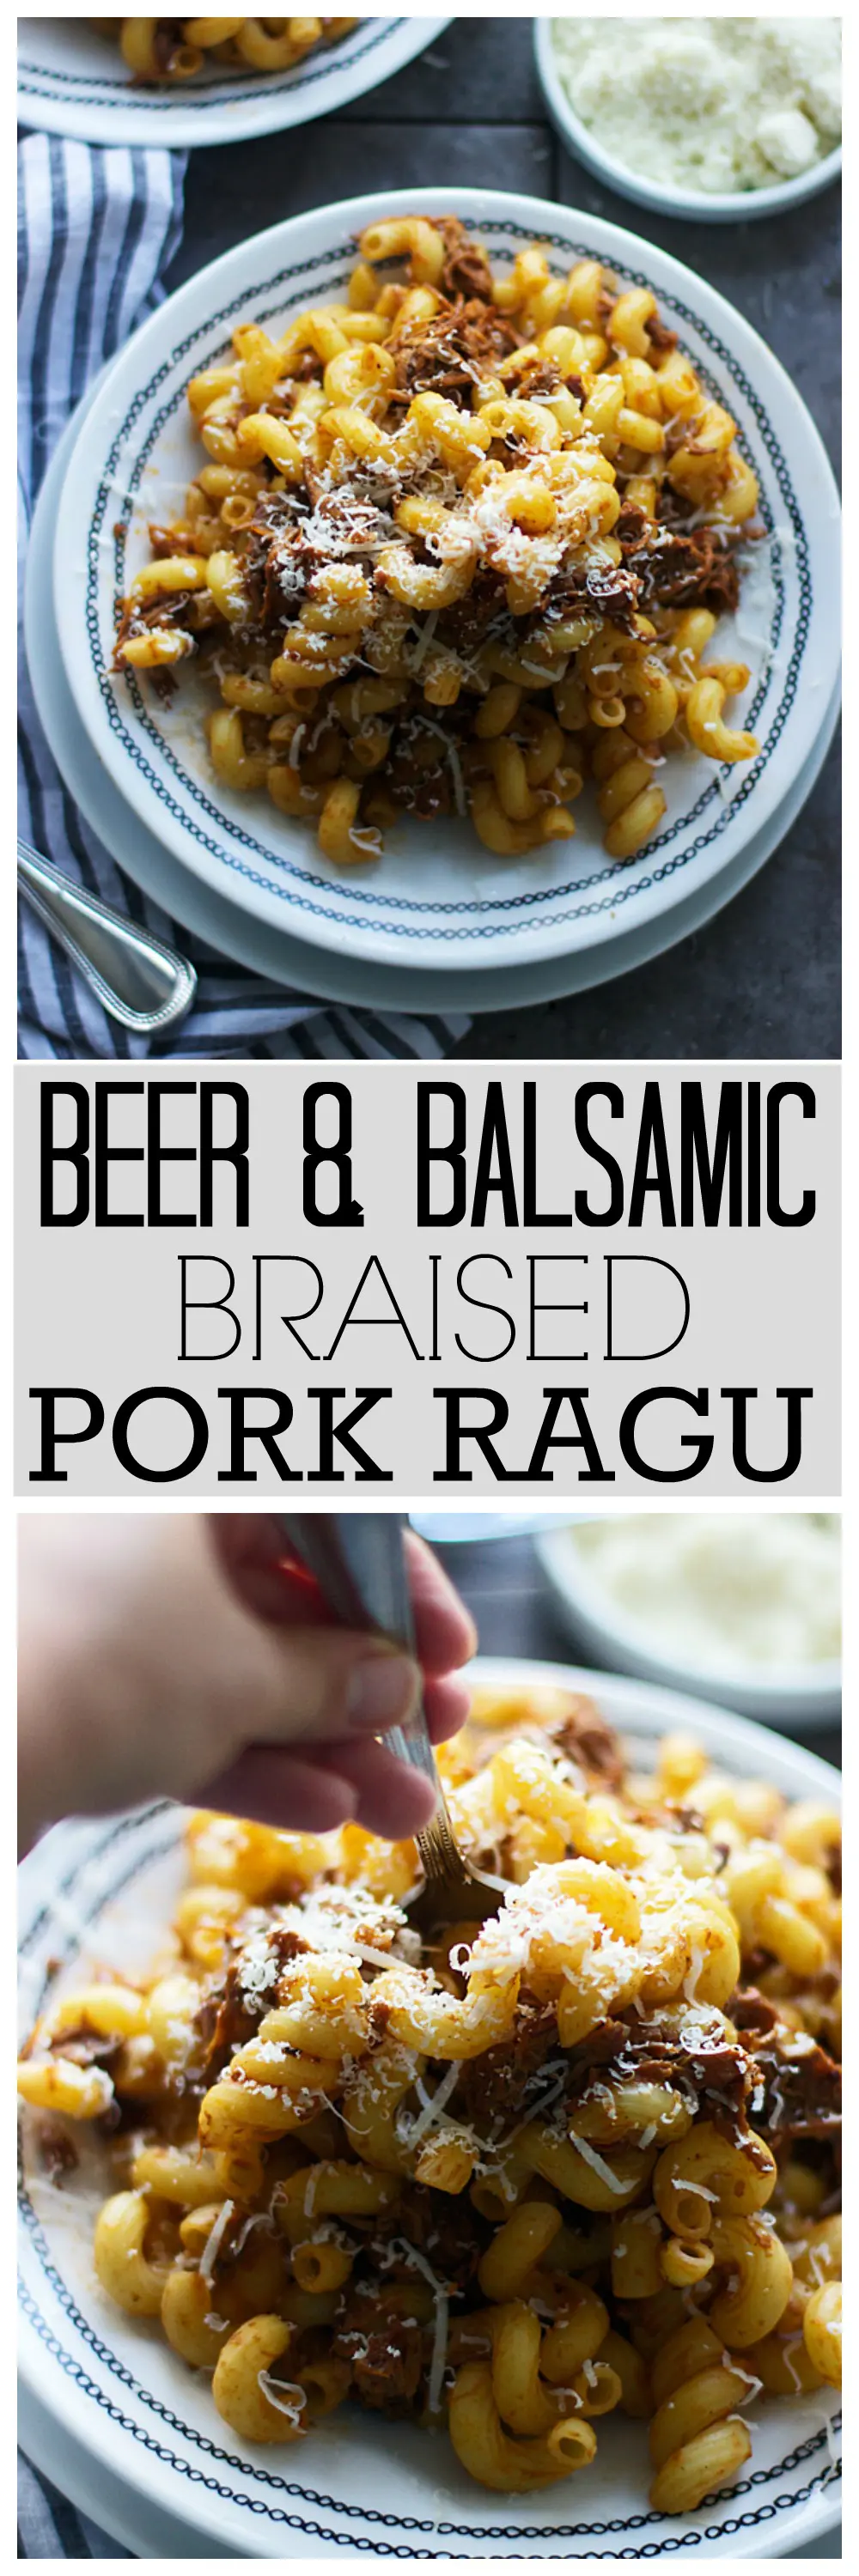 Beer and Balsamic Braised Pork Ragu